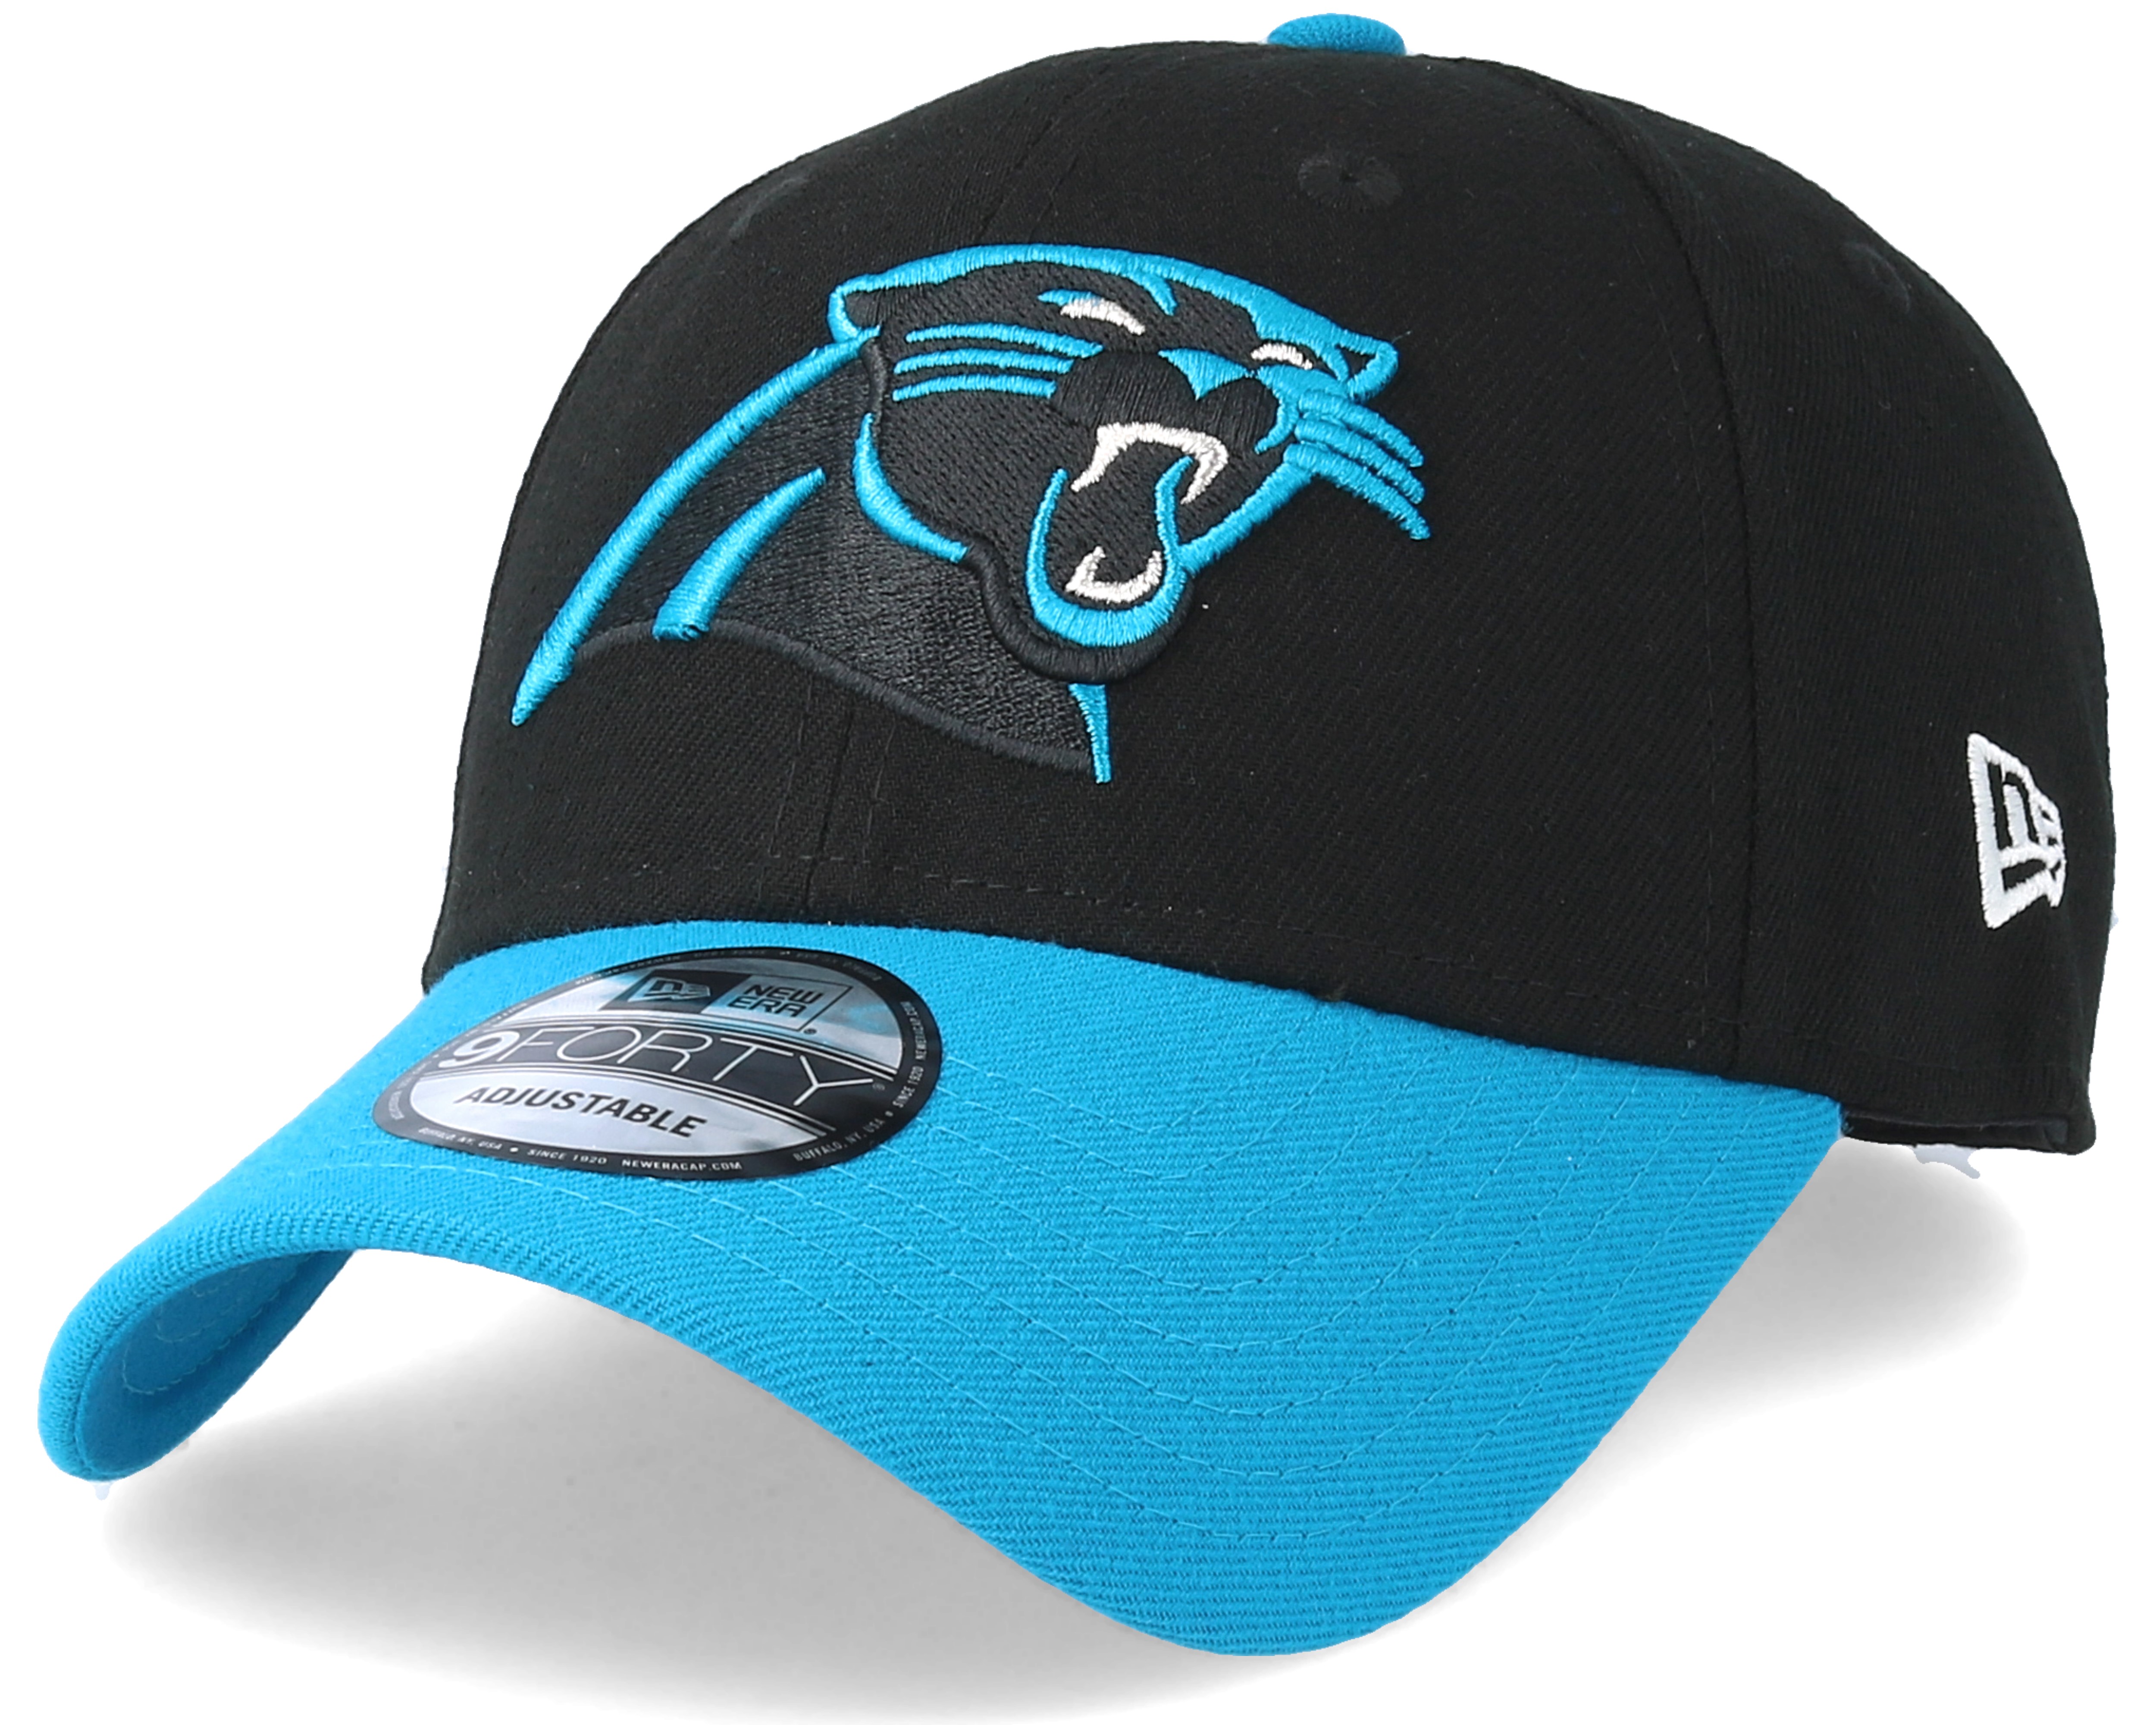 Carolina Panthers The League Team 940 Adjustable - New Era caps